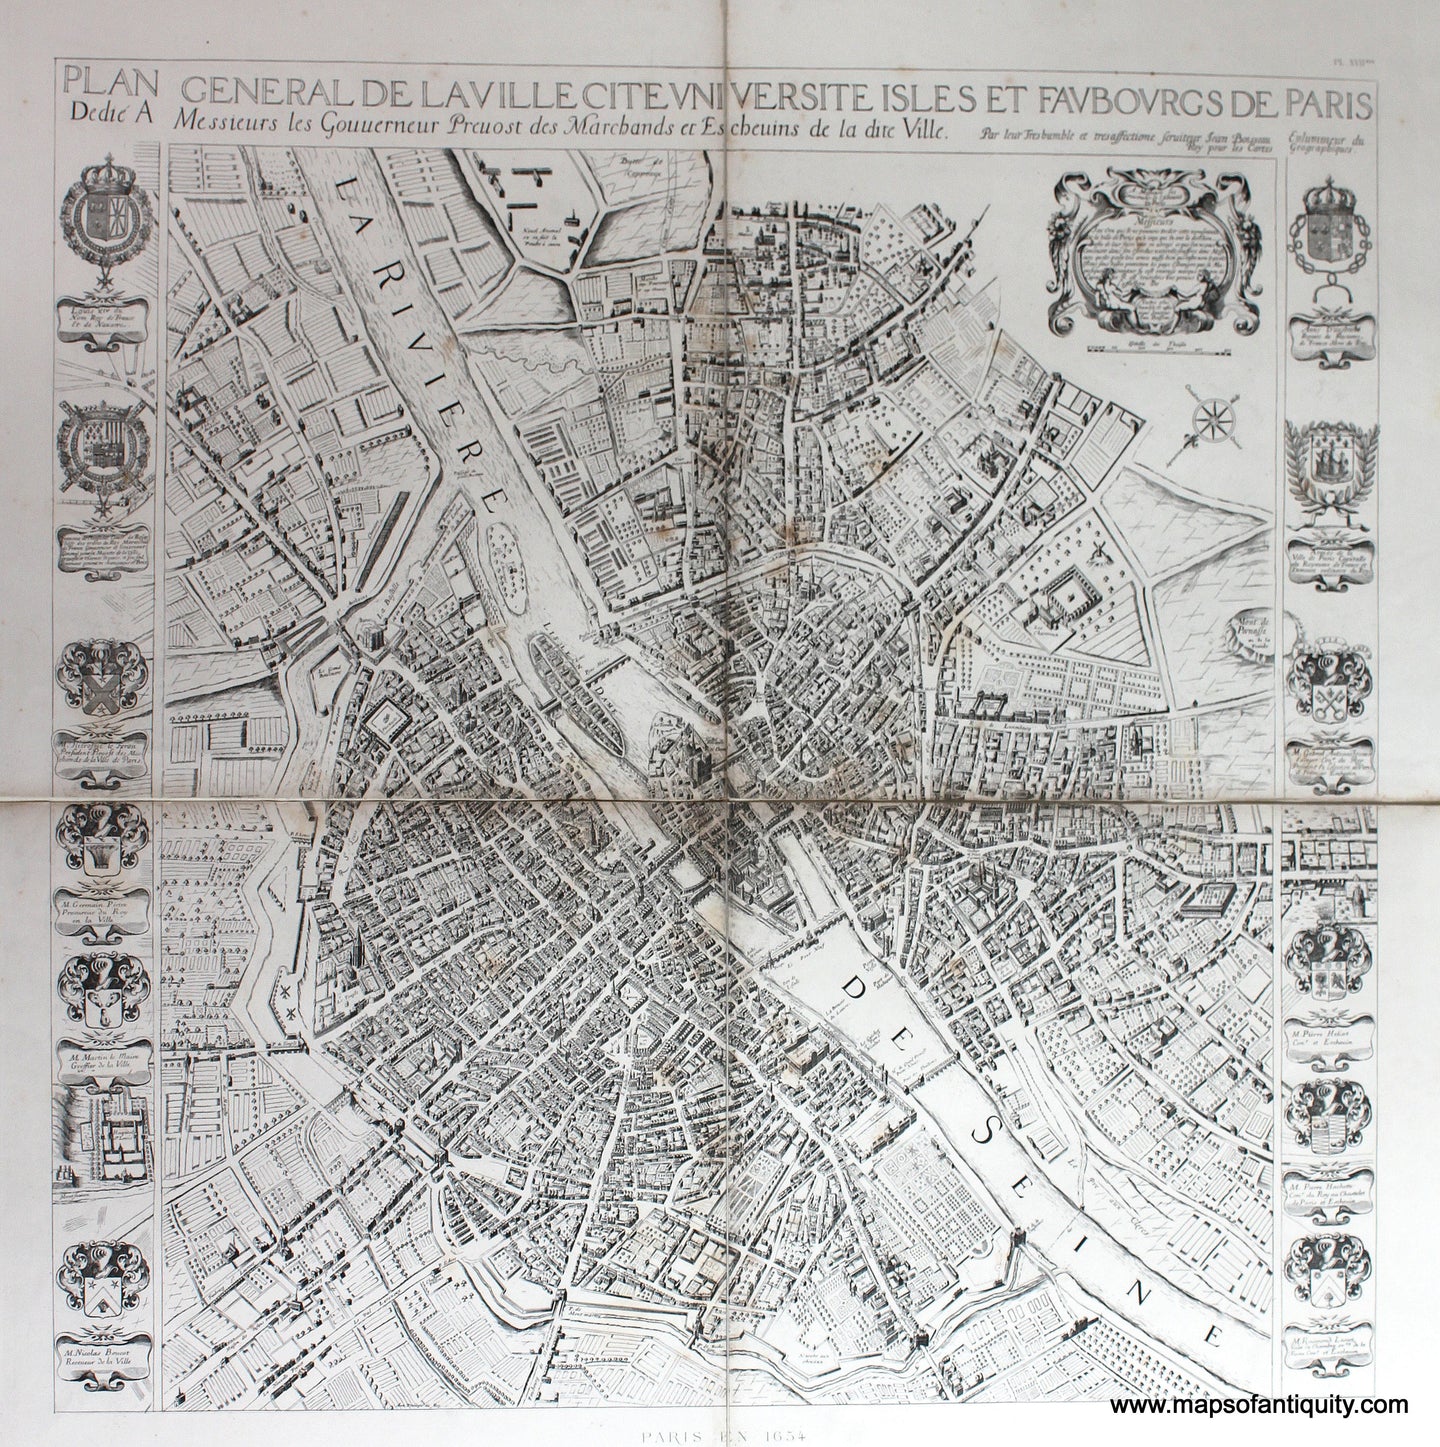 Genuine-Antique-Map-Paris-en-1654-Plan-General-de-la-Ville-Cite-Universite-Isles-et-Faubourgs-de-Paris-1880-Jean-Charles-Adolphe-Alphand-Maps-Of-Antiquity